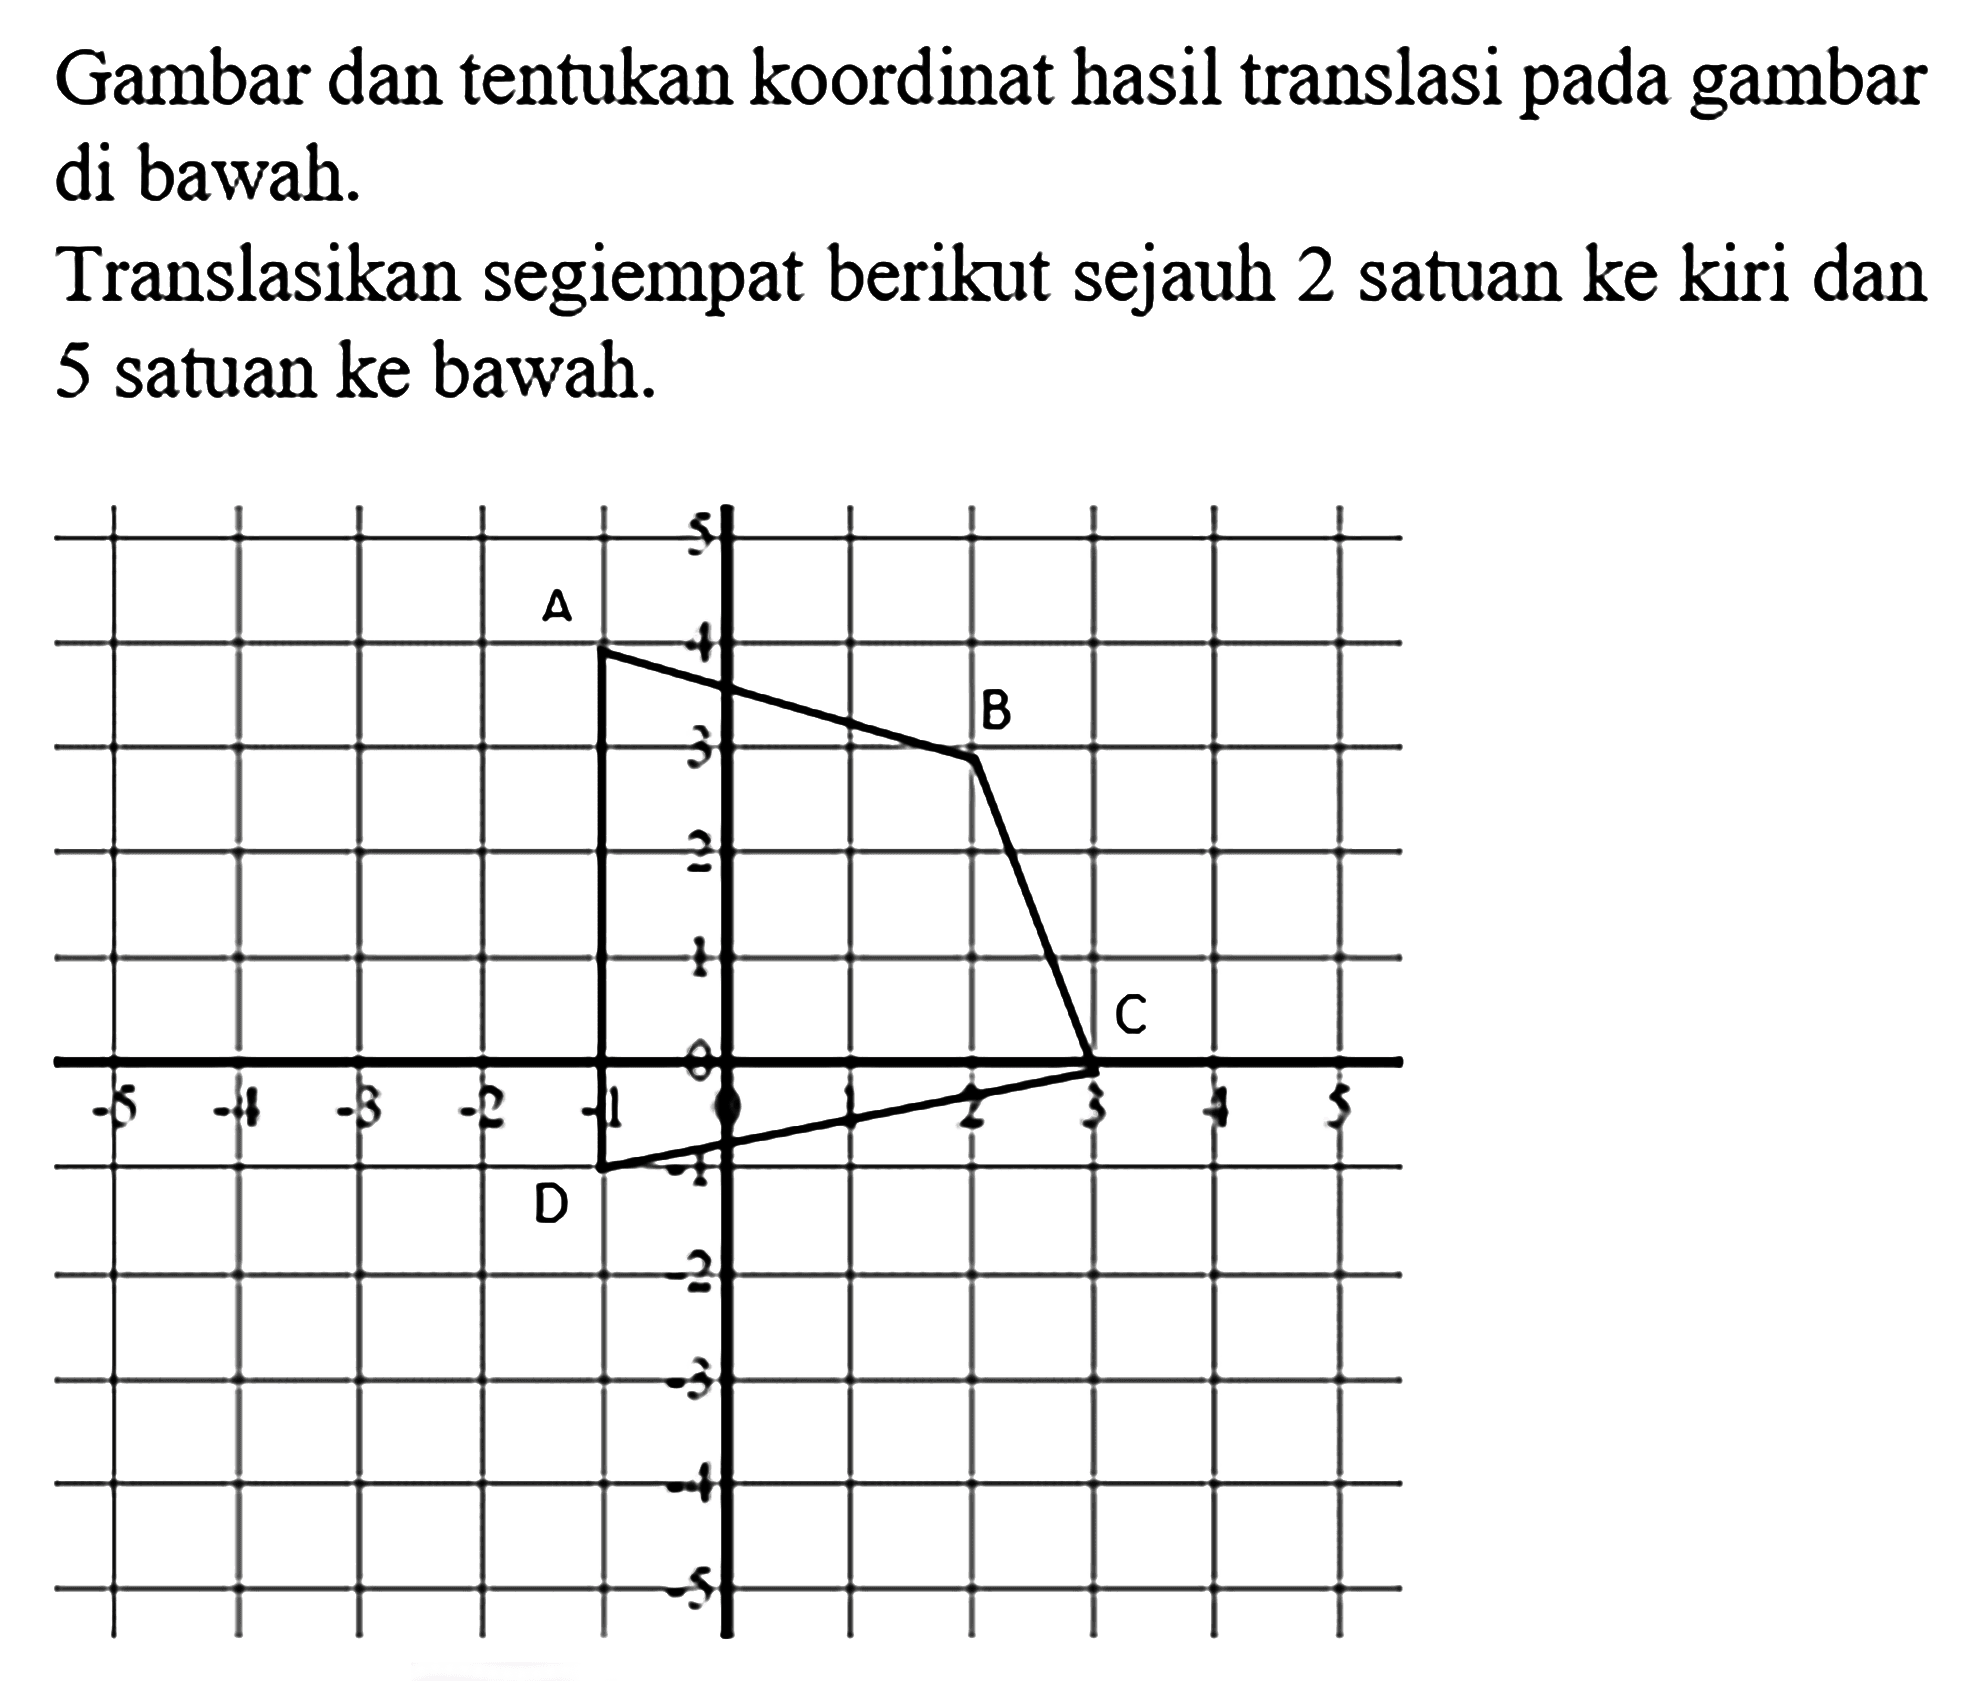 Gambar dan tentukan koordinat hasil translasi pada gambar di bawah.Translasikan segiempat berikut sejauh 2 satuan ke kiri dan 5 satuan ke bawah.